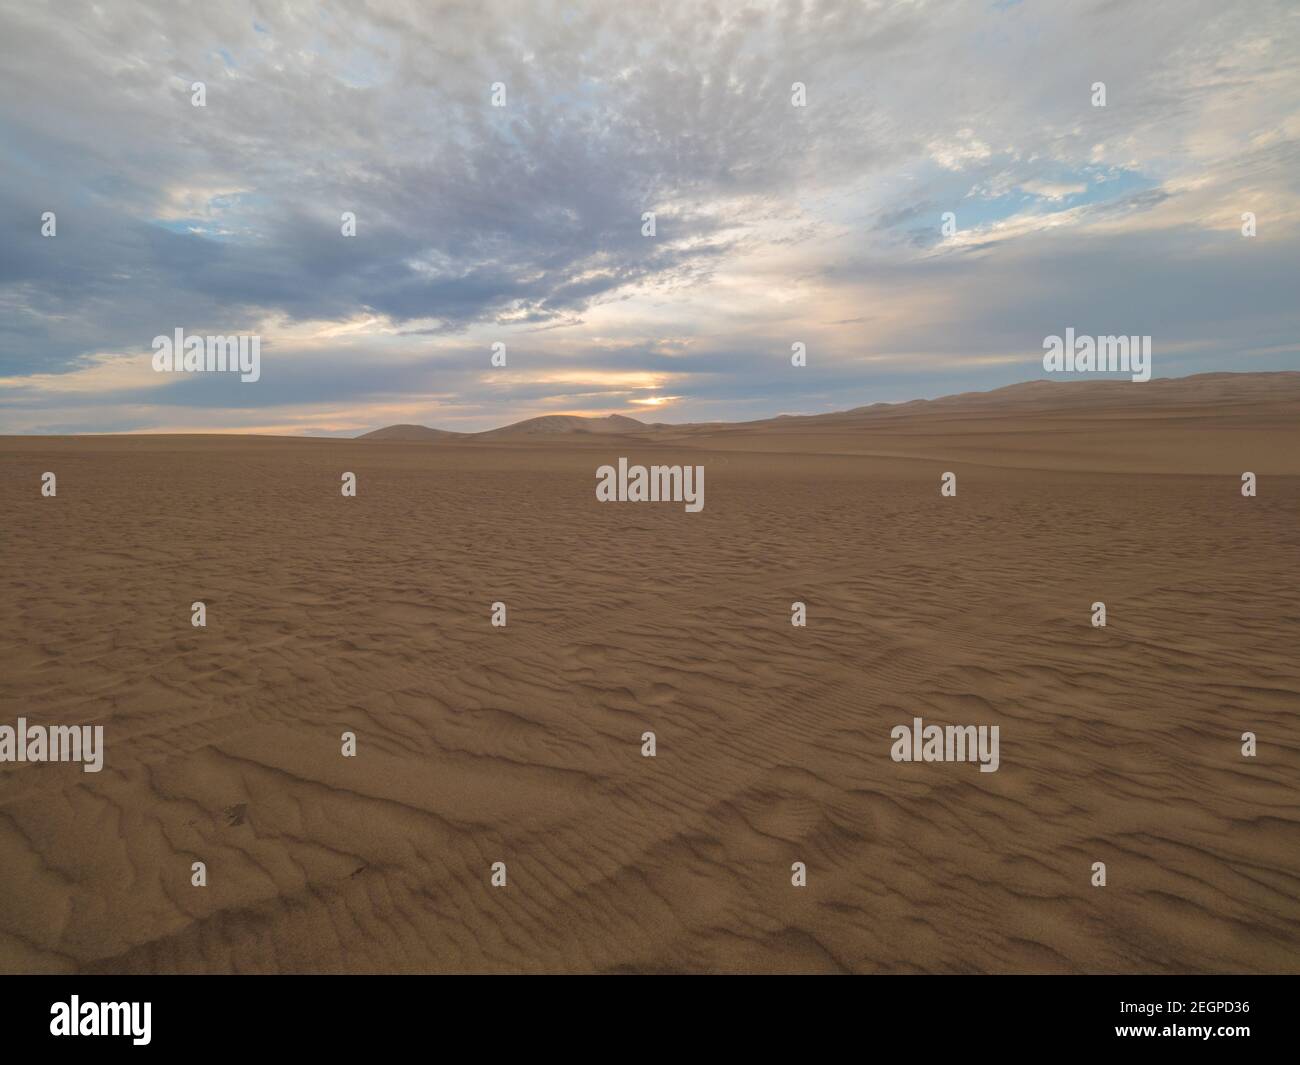 Coucher de soleil dans le désert, la lumière brille sur le sable doré sous le ciel bleu doré Banque D'Images